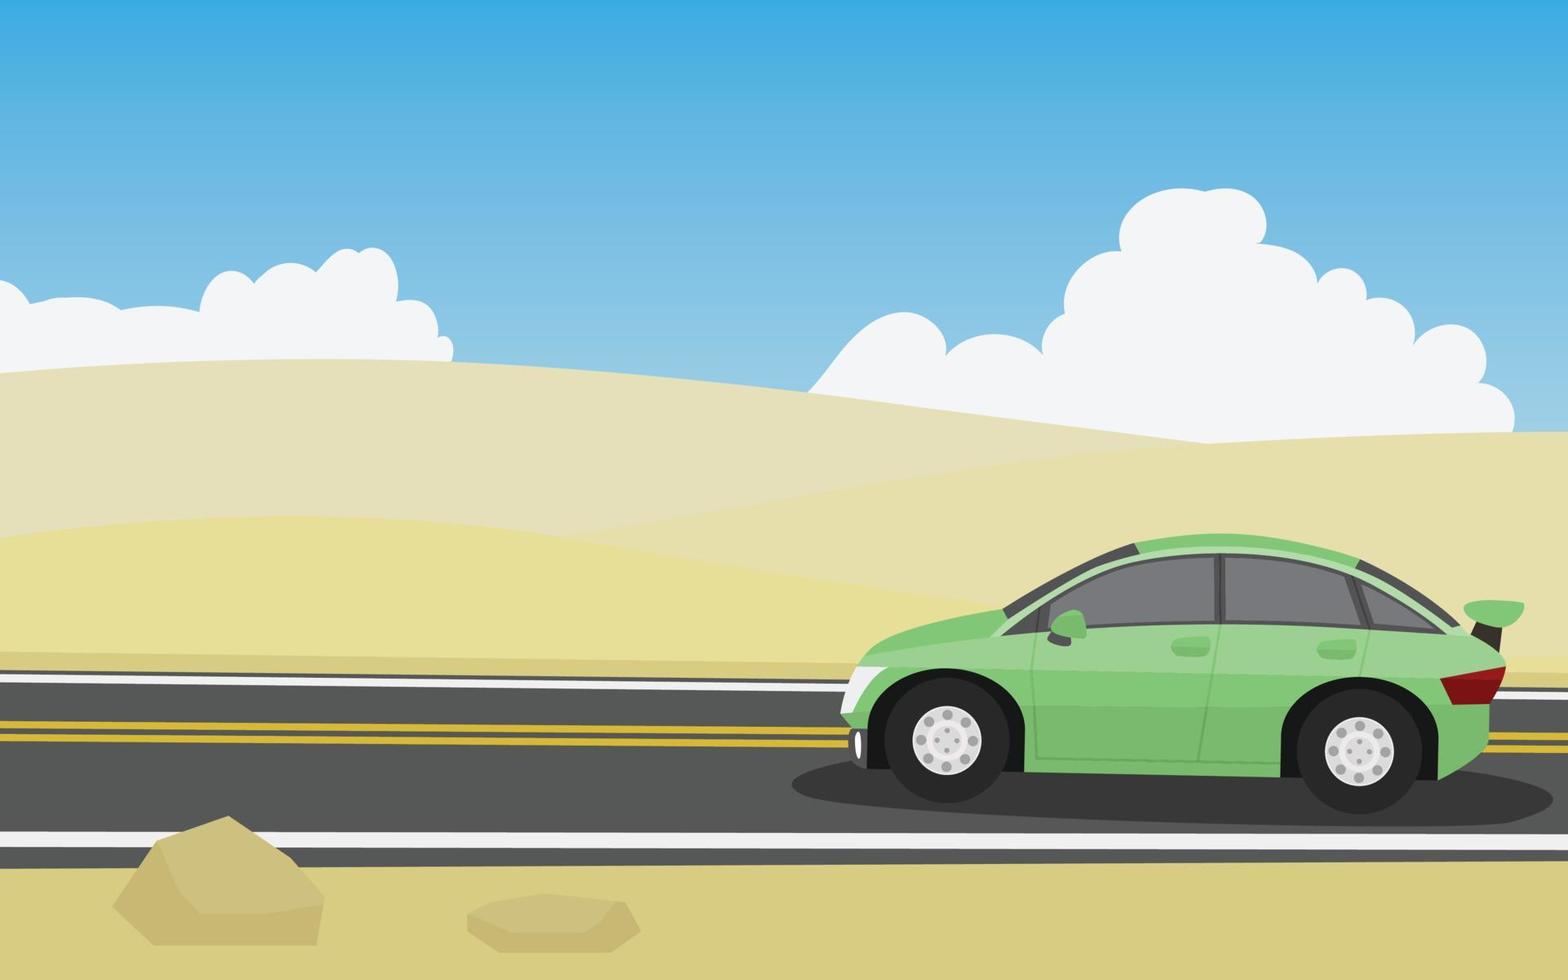 carros viajando cor verde. dirigindo em uma estrada de asfalto com colinas ondulantes do deserto. papel de parede de céu azul e nuvens brancas. vetor